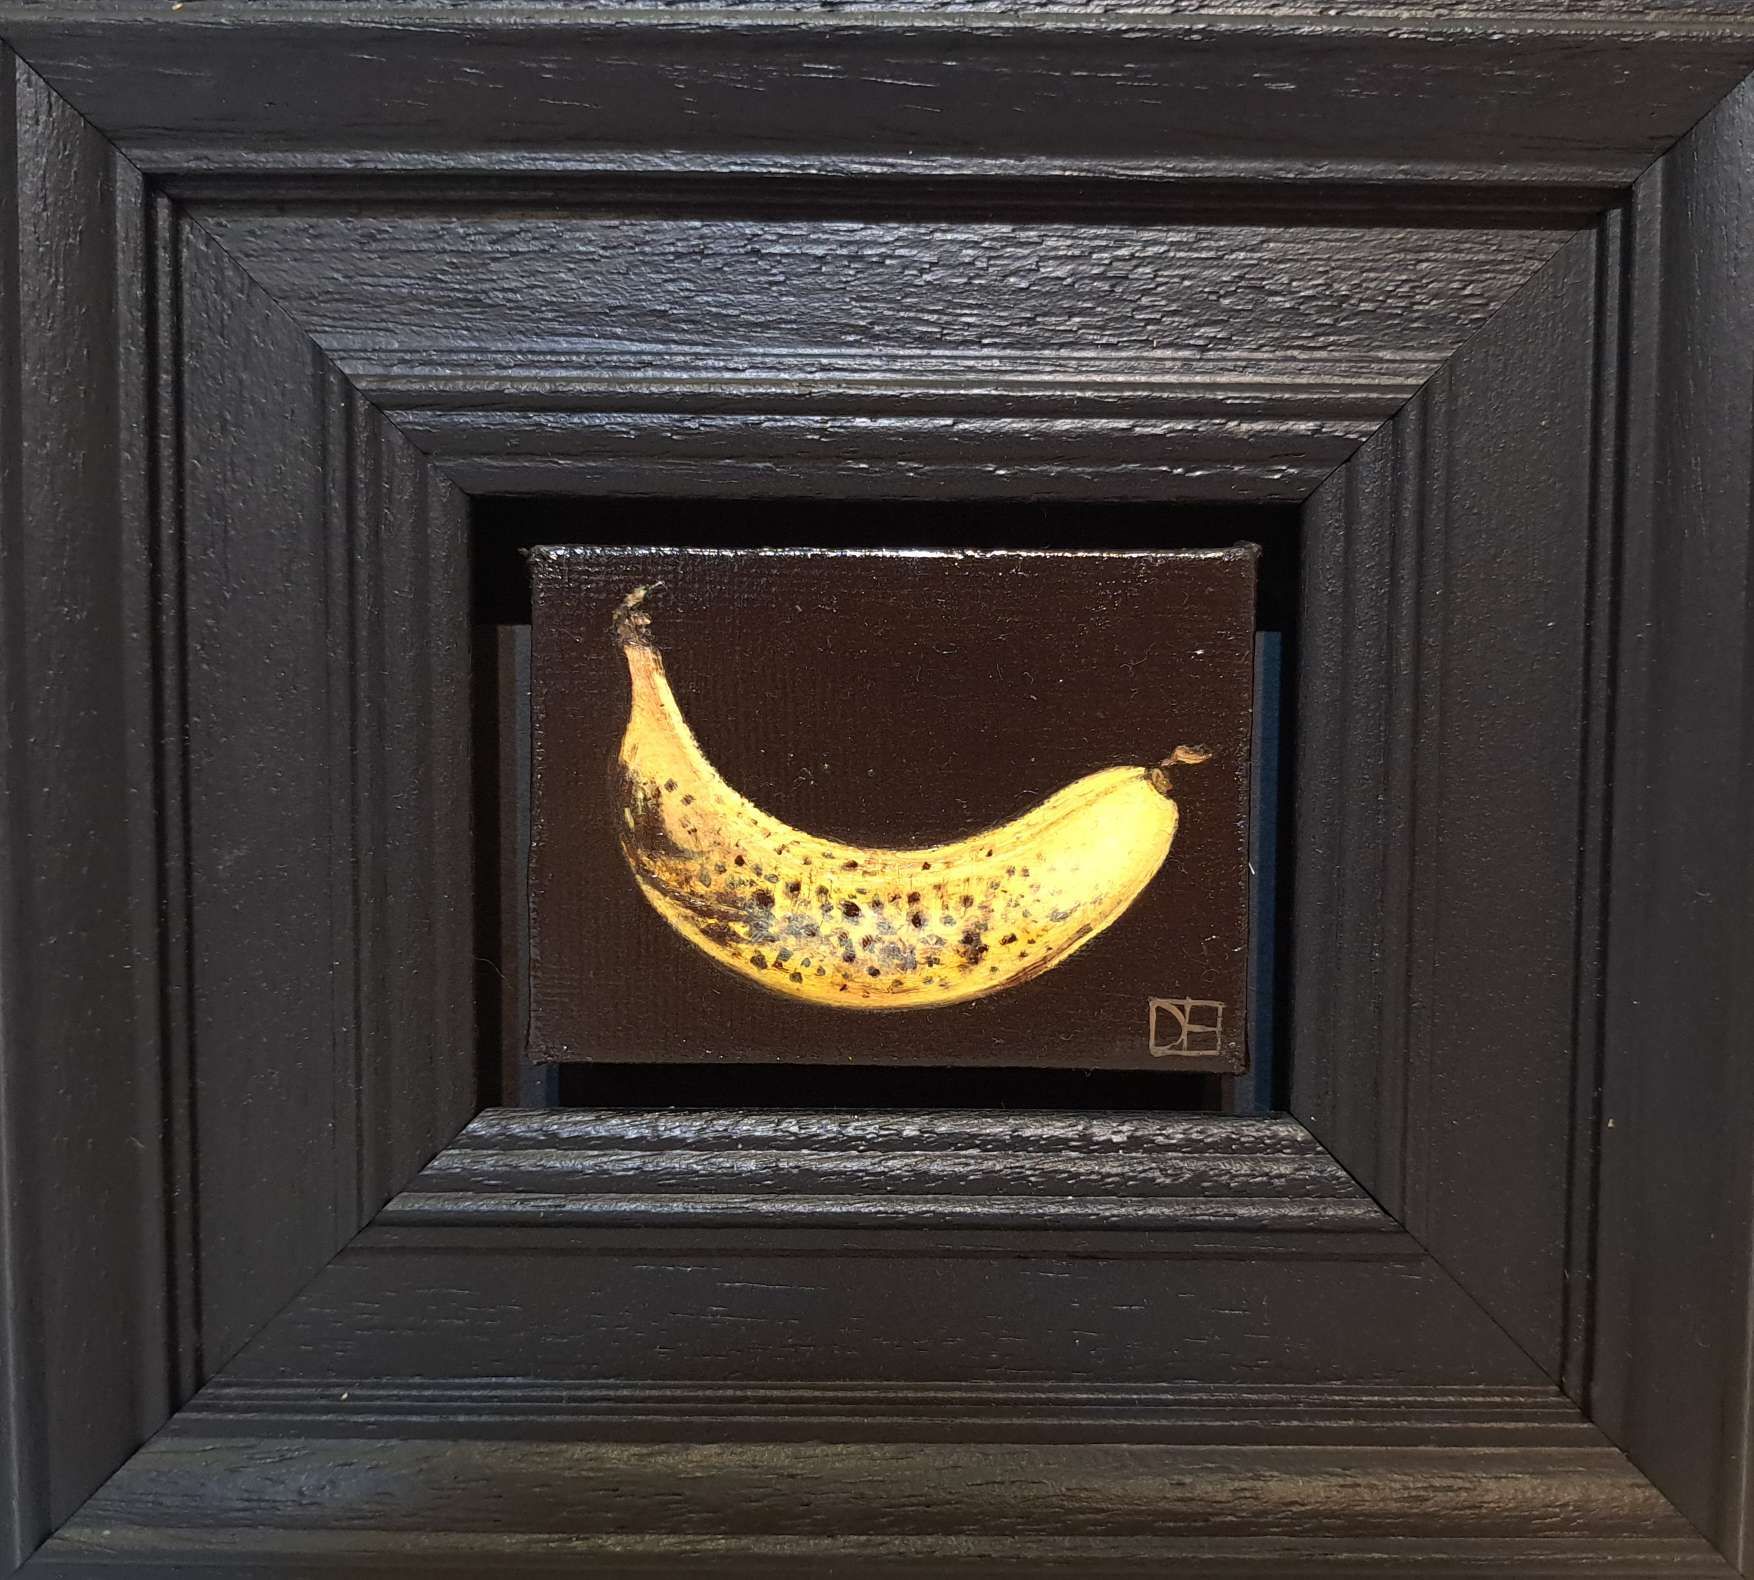 Pocket Ripe-ish Yellow Banana by Dani Humberstone